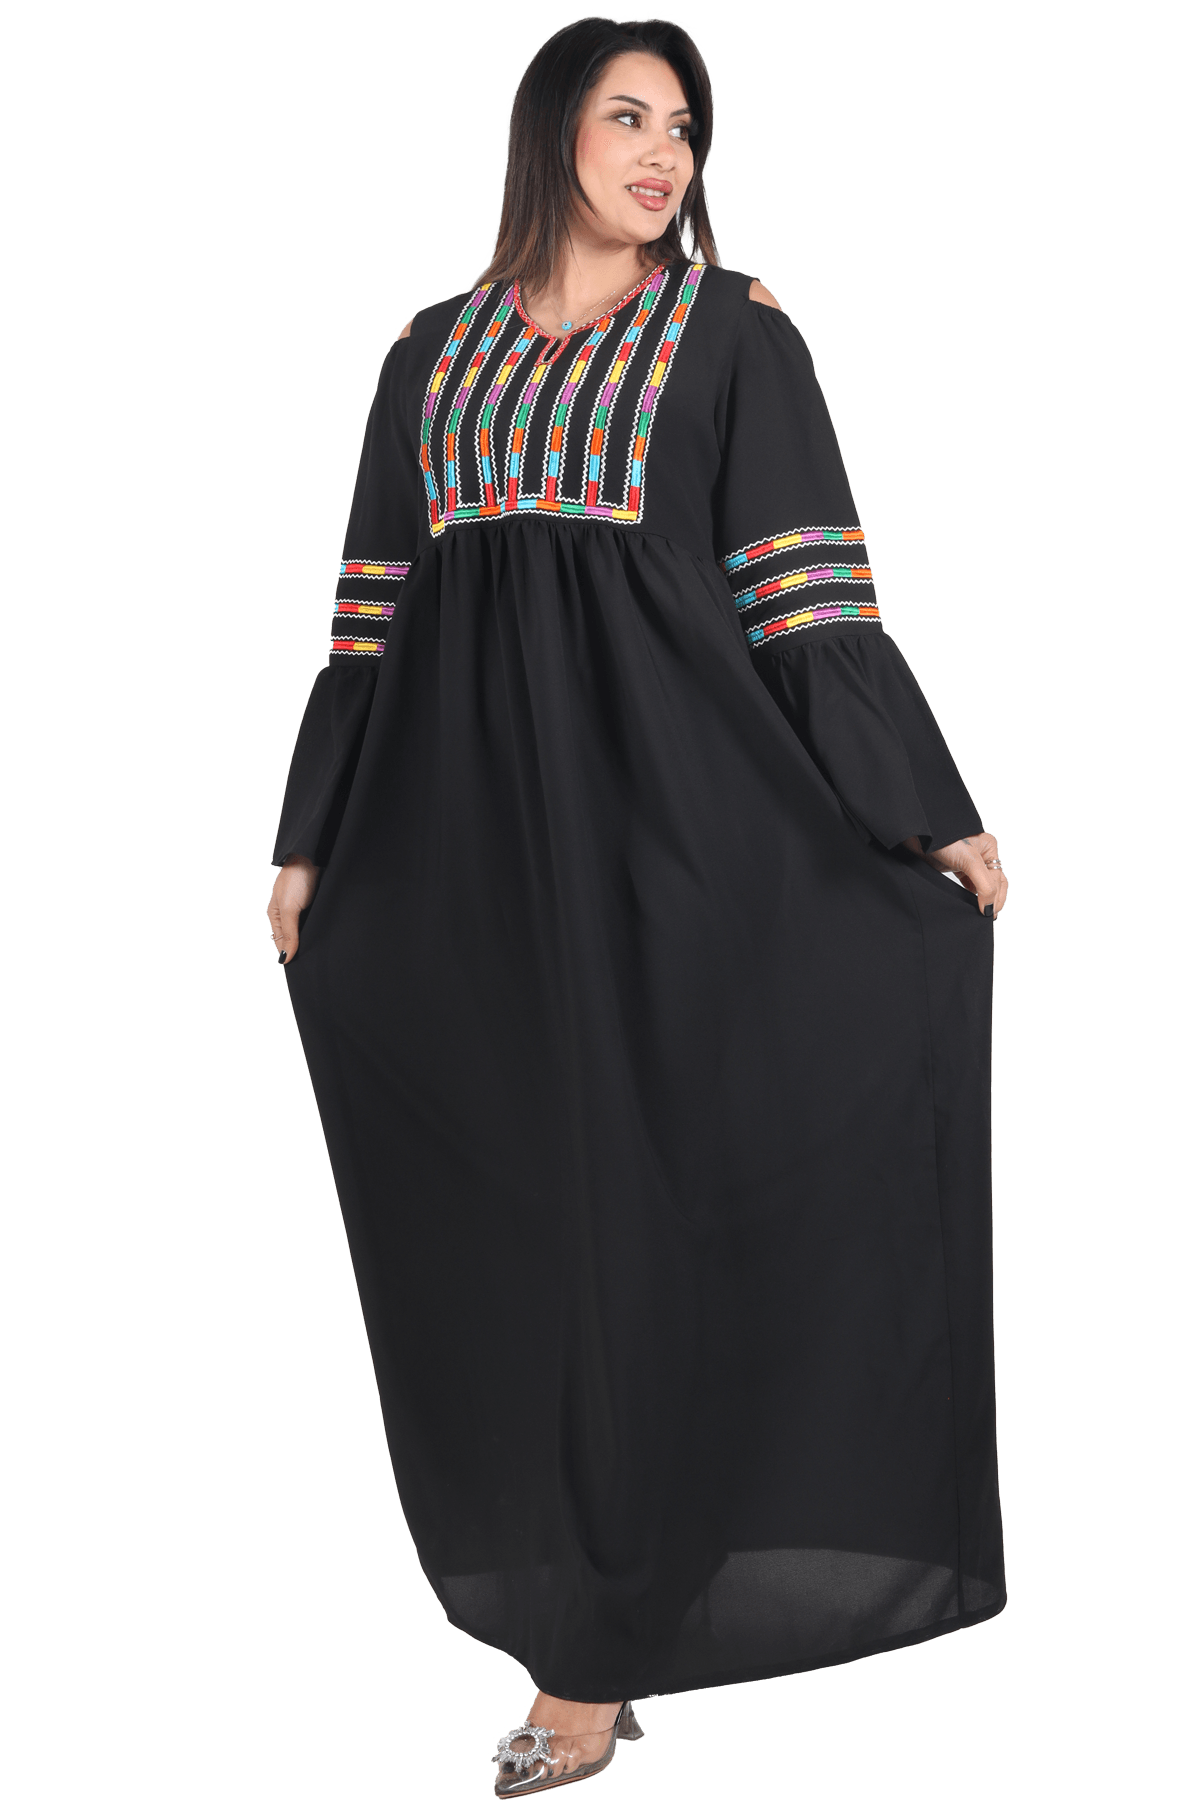 Manajel dress - Tatreez Store